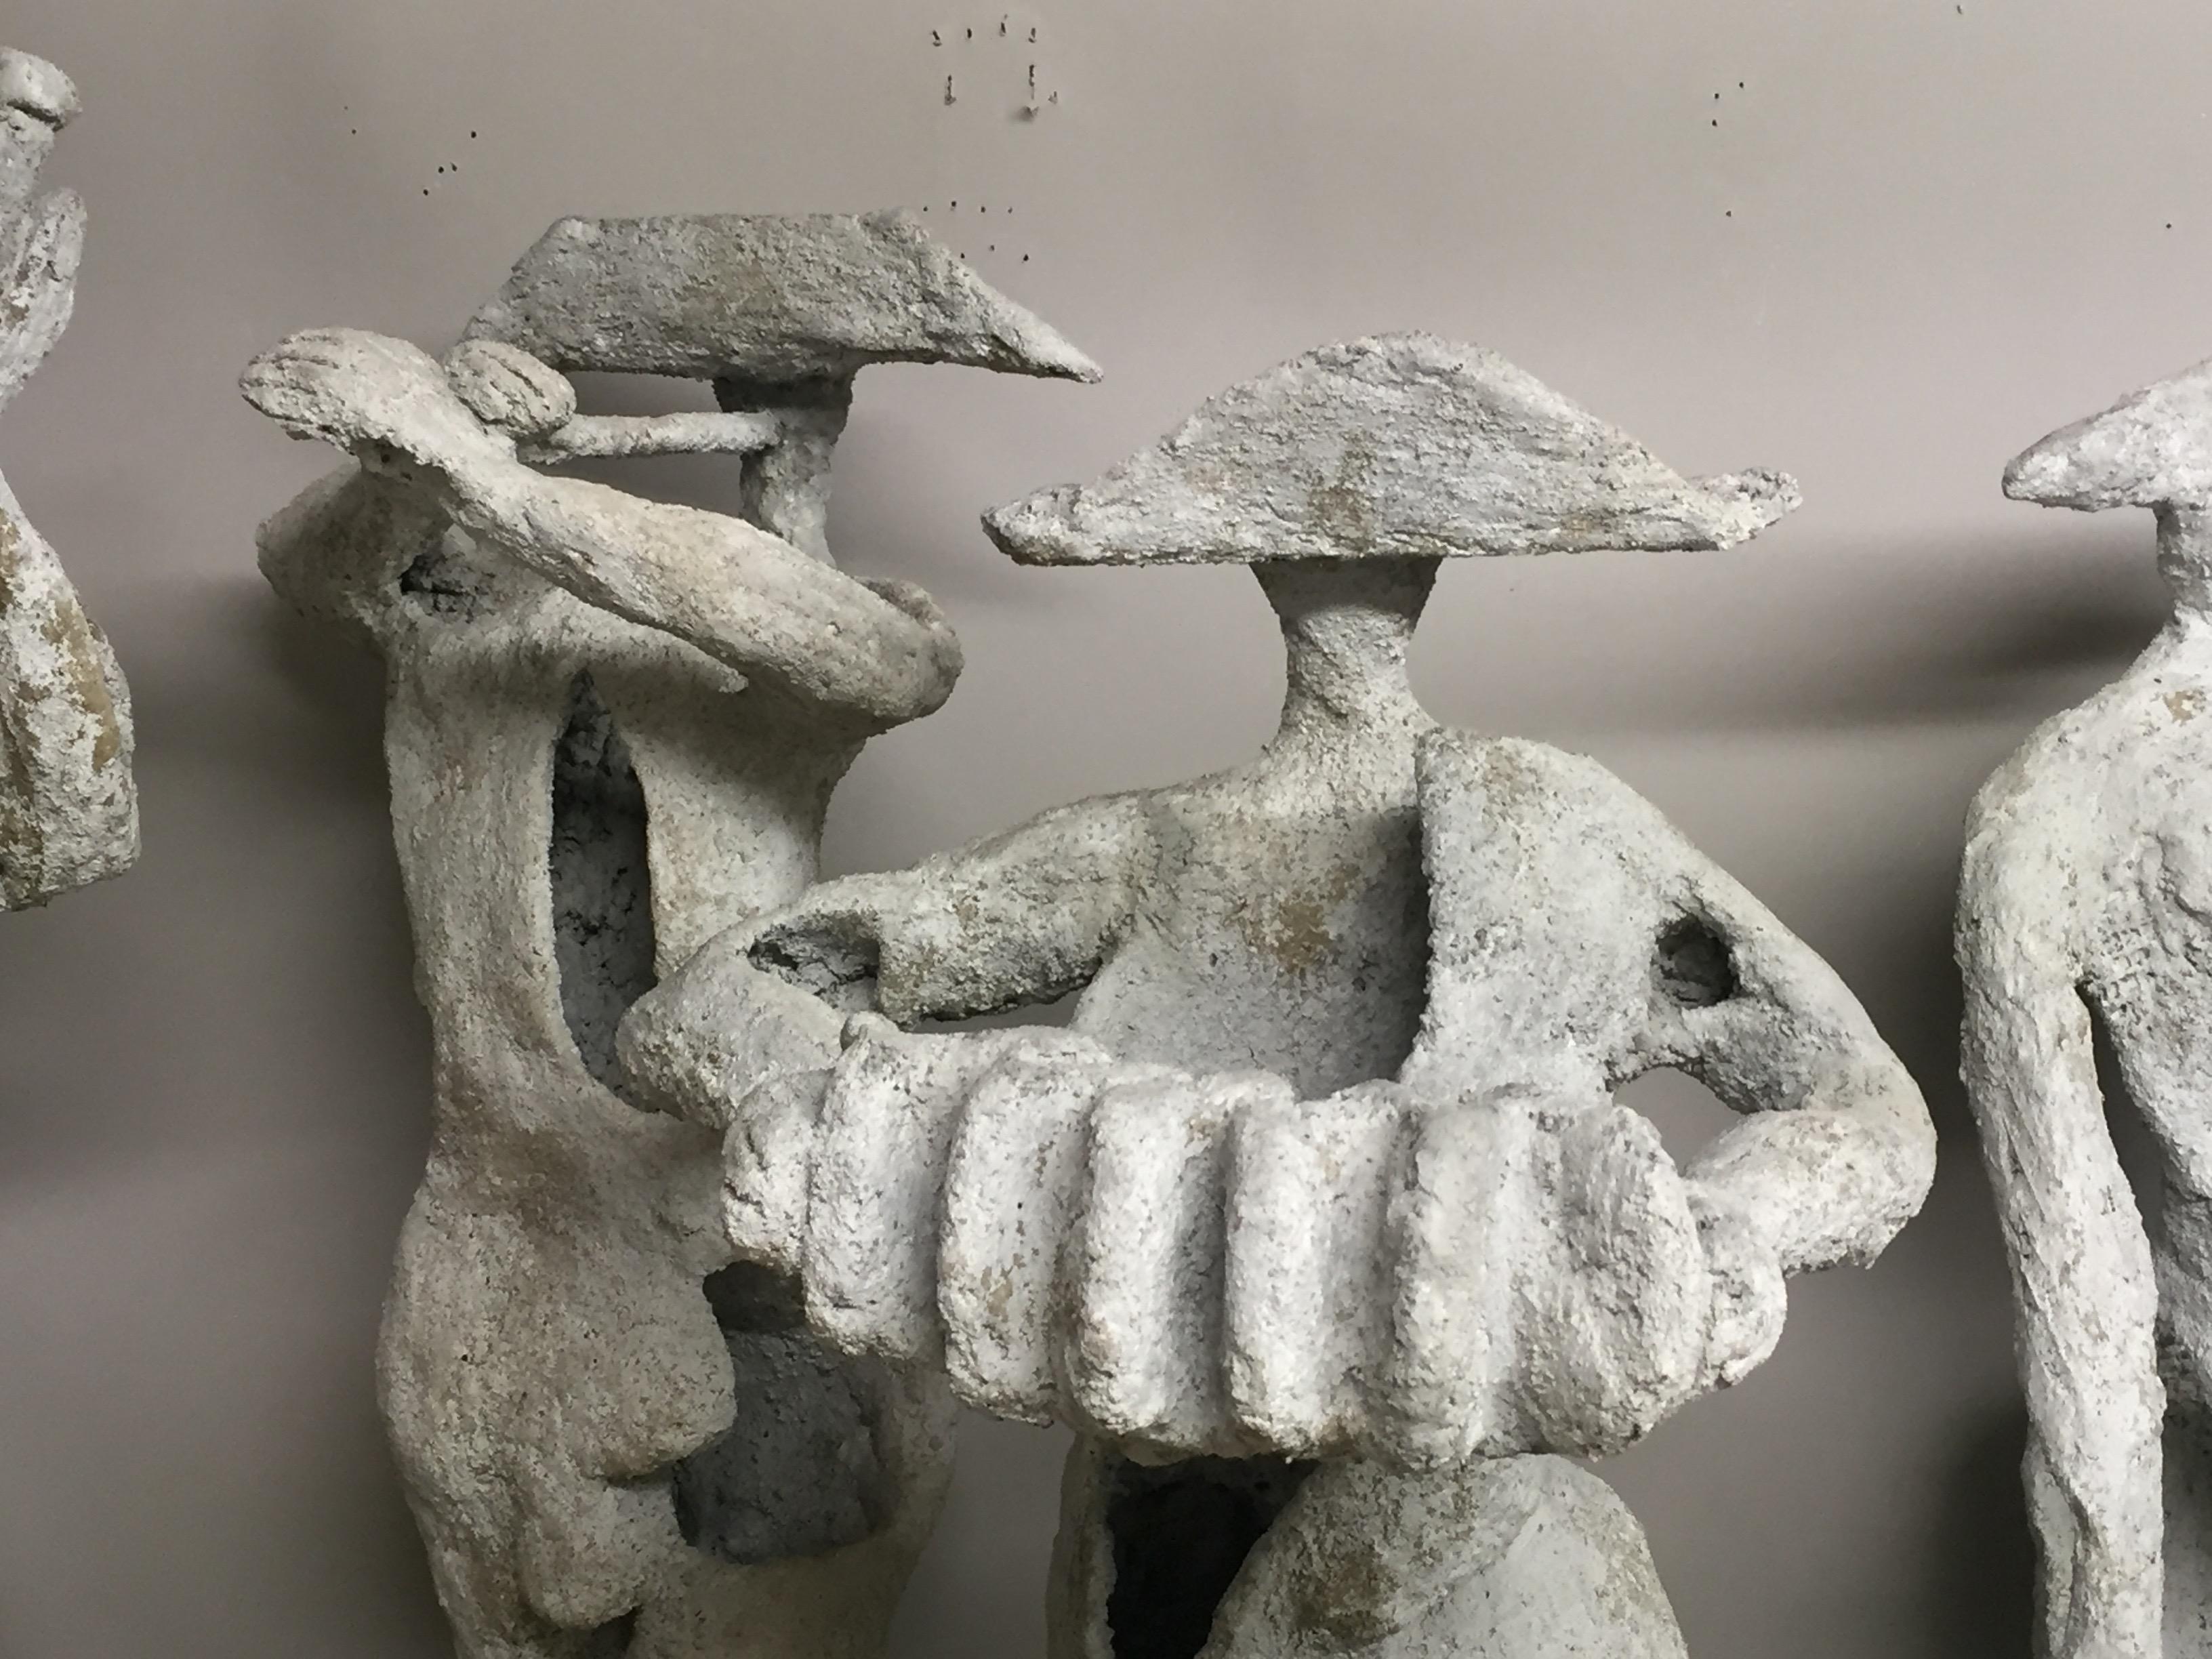 Wunderschönes Set von 4 Zementskulpturen, die eine Gruppe von Troubadoure darstellen, geschaffen von dem bekannten Künstler Robert Cannon aus Princeton, der sogenannte Terraformen entwickelt hat, Konstruktionen aus hohlem Ferrozement, die es der